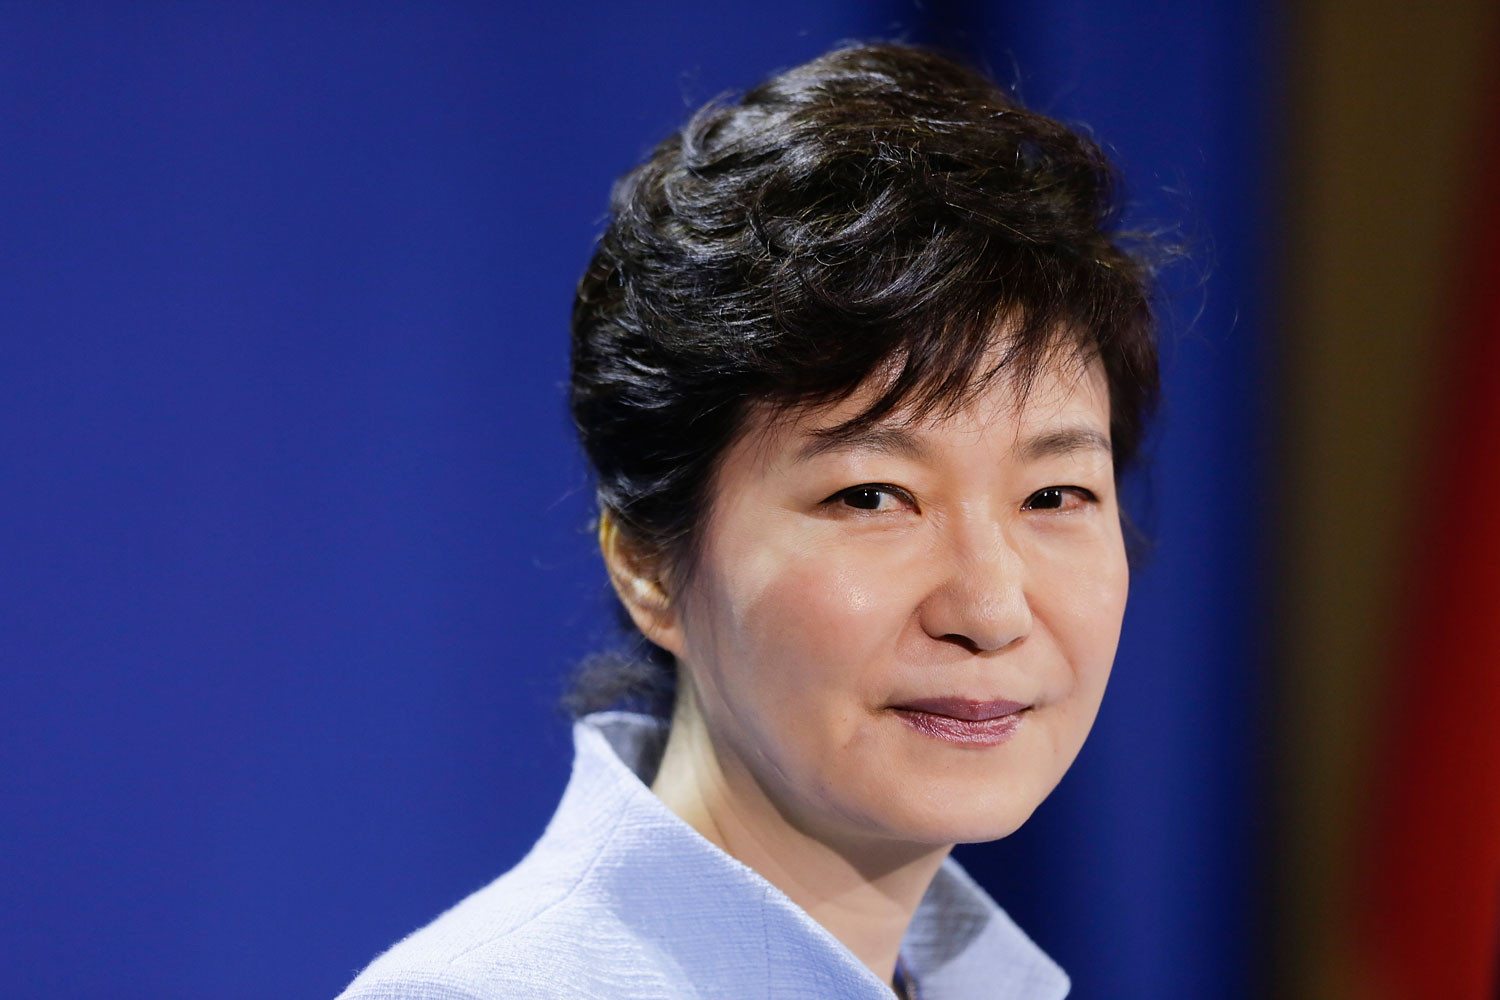 President of South Korea Park Geun-hye